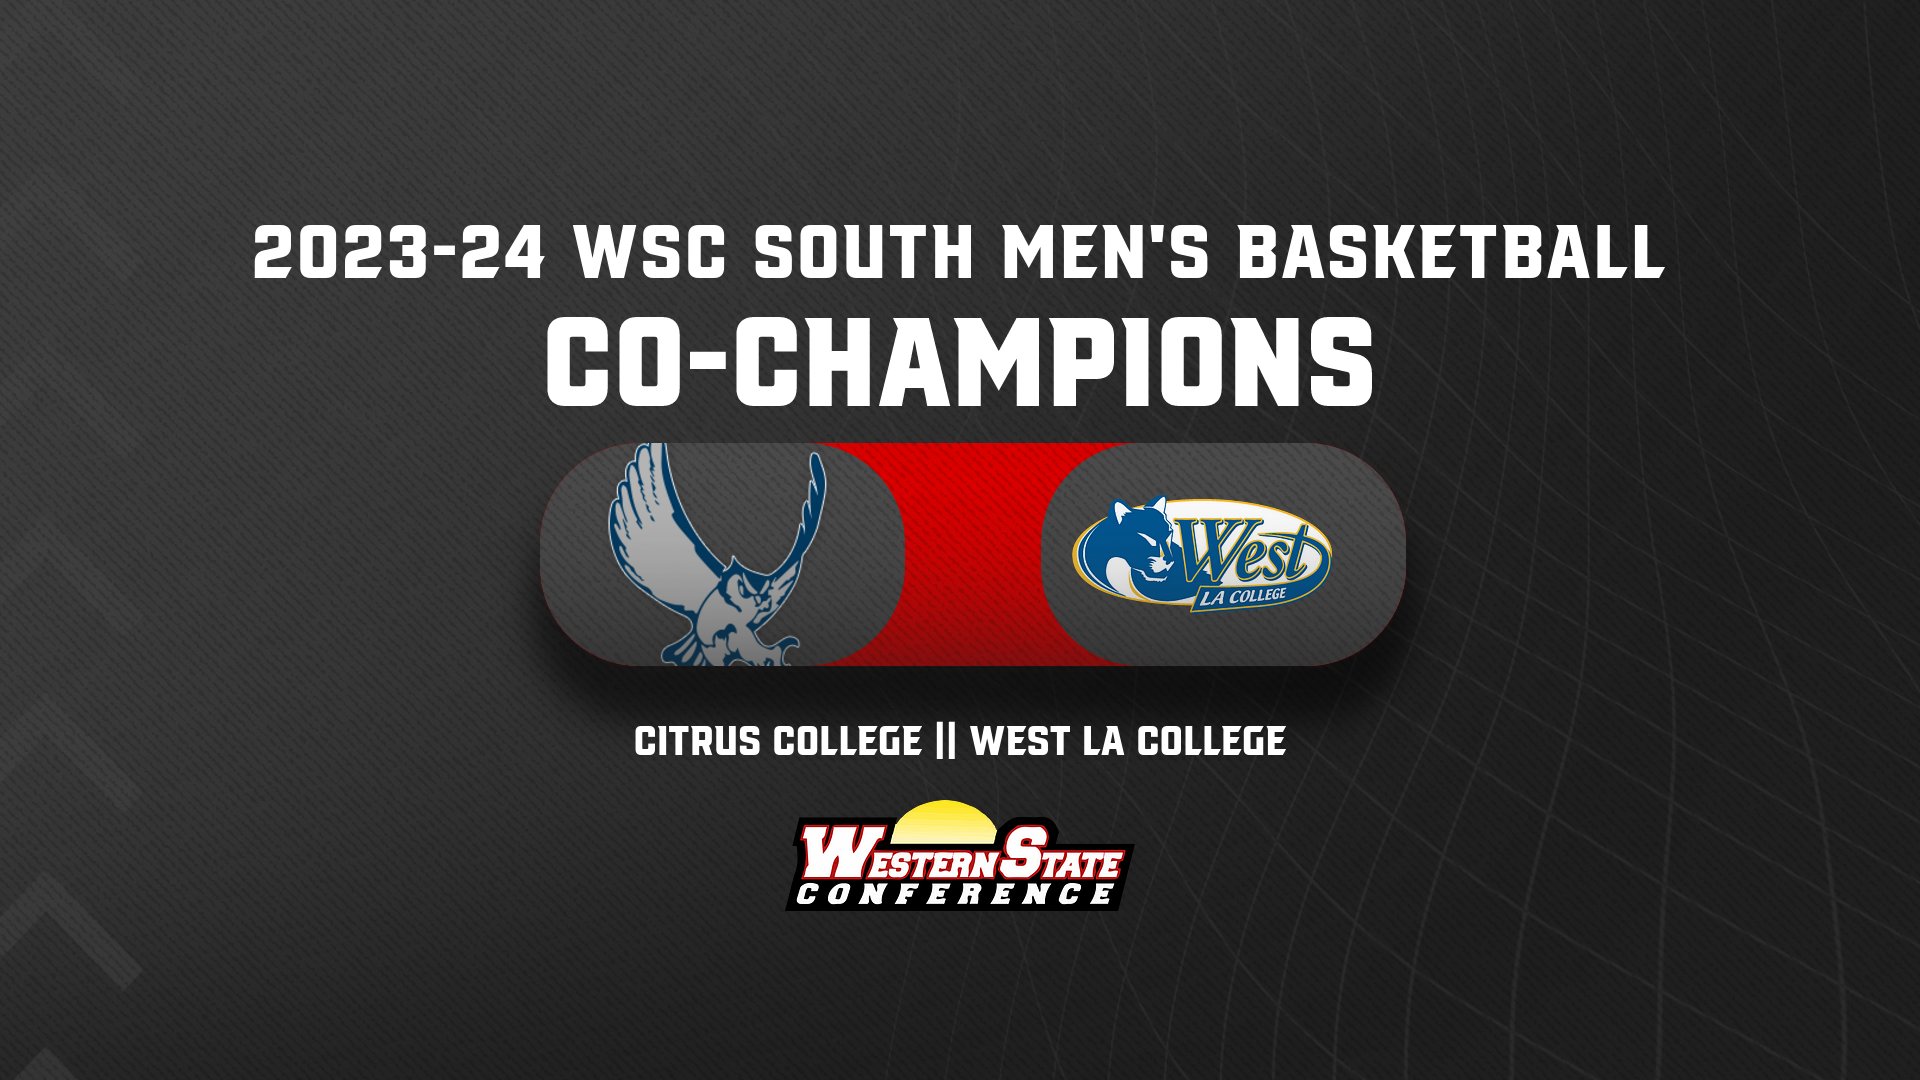 Citrus & West LA Split WSC South Men's Basketball Crown